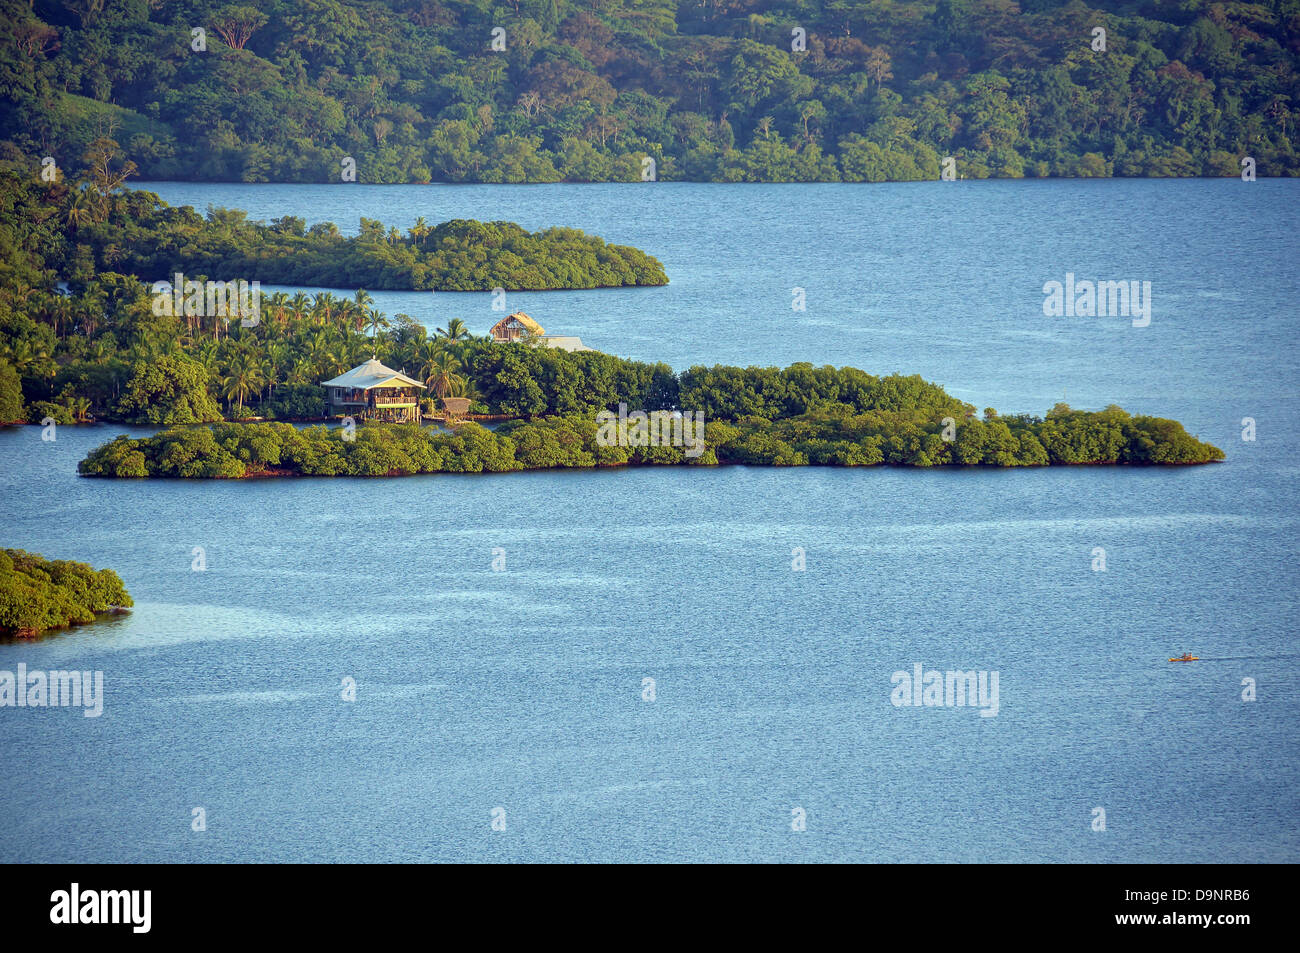 Veduta aerea della costa tropicale con vegetazione lussureggiante e una casa, arcipelago di Bocas del Toro, Mar dei Caraibi, Panama, America Centrale Foto Stock